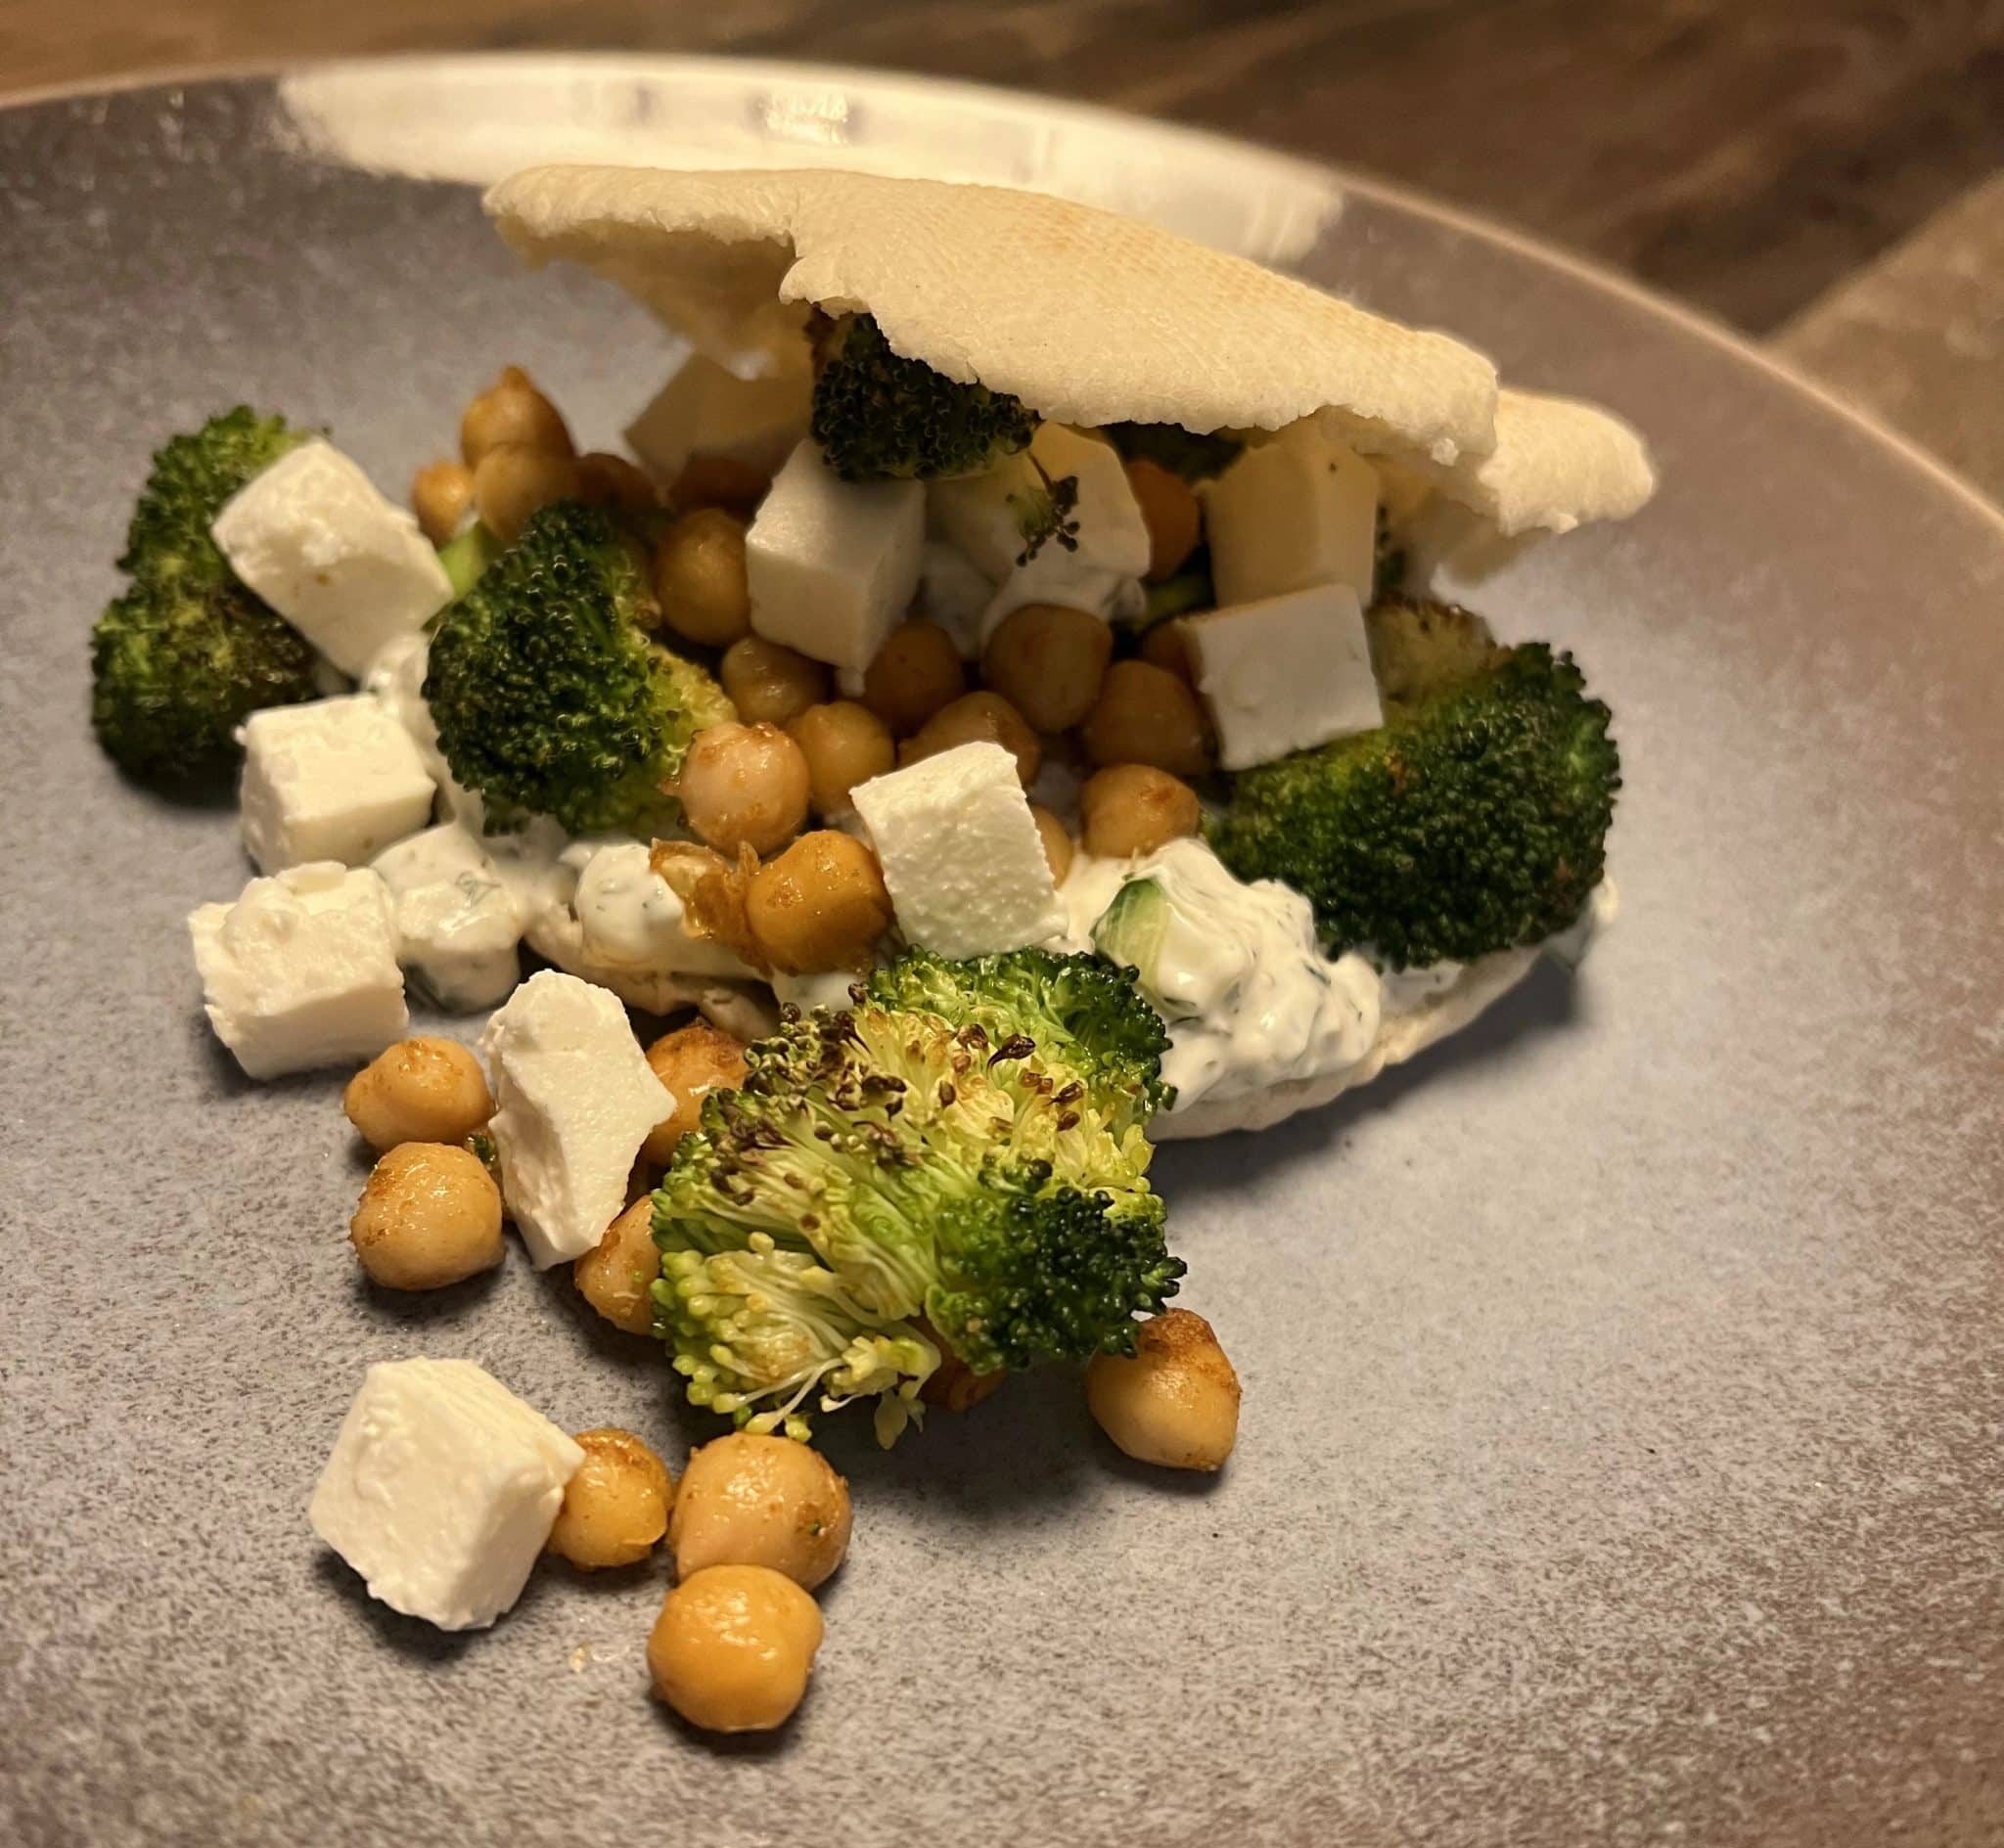 Recipe: Pita Bread with Broccoli and Chickpeas